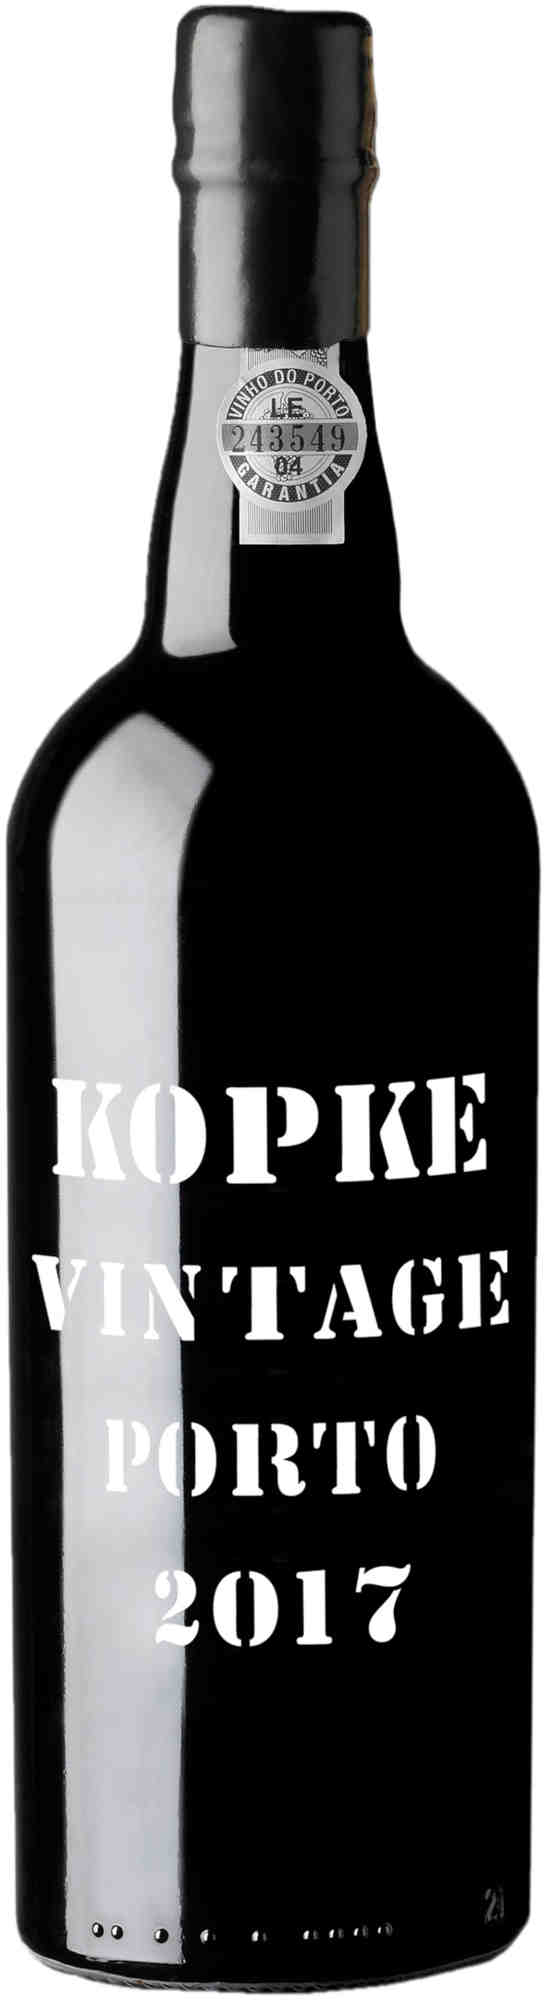 Kopke-Vintage-Port-2017